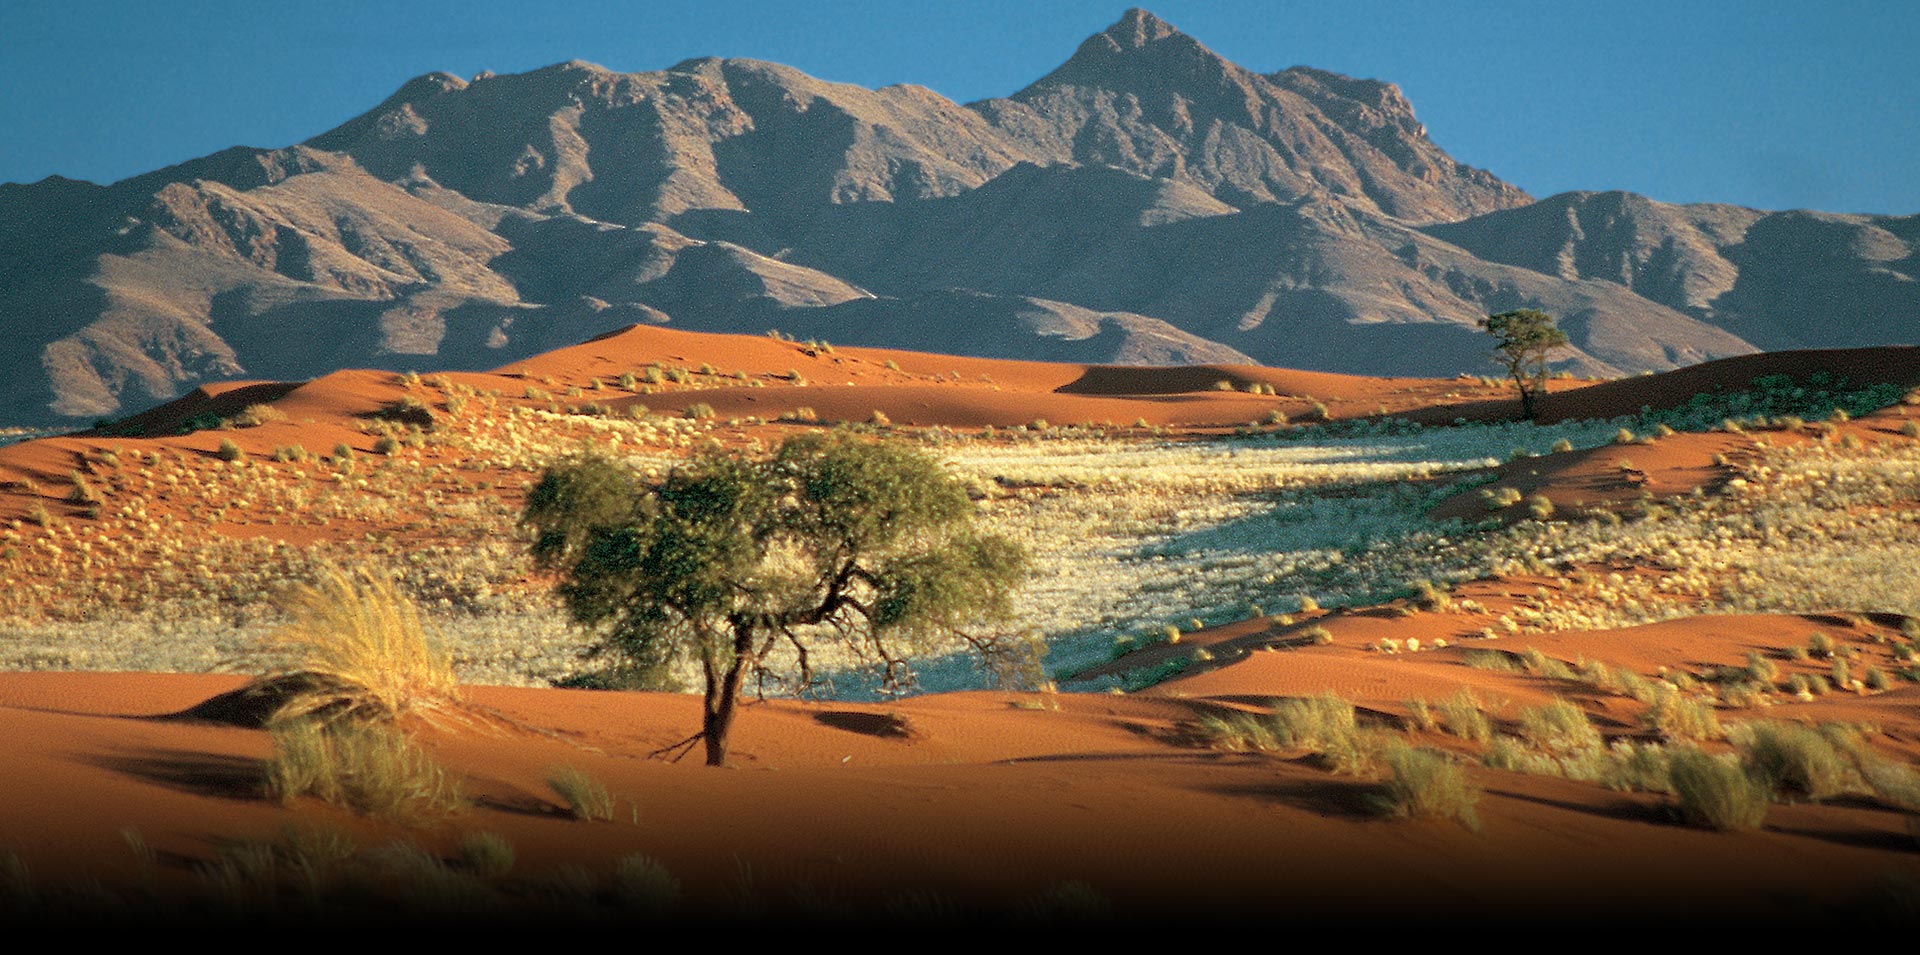  ناميبيا مغامرة جريئة داخل الأرض المحرمة للاستمتاع بالسحر الأفريقي